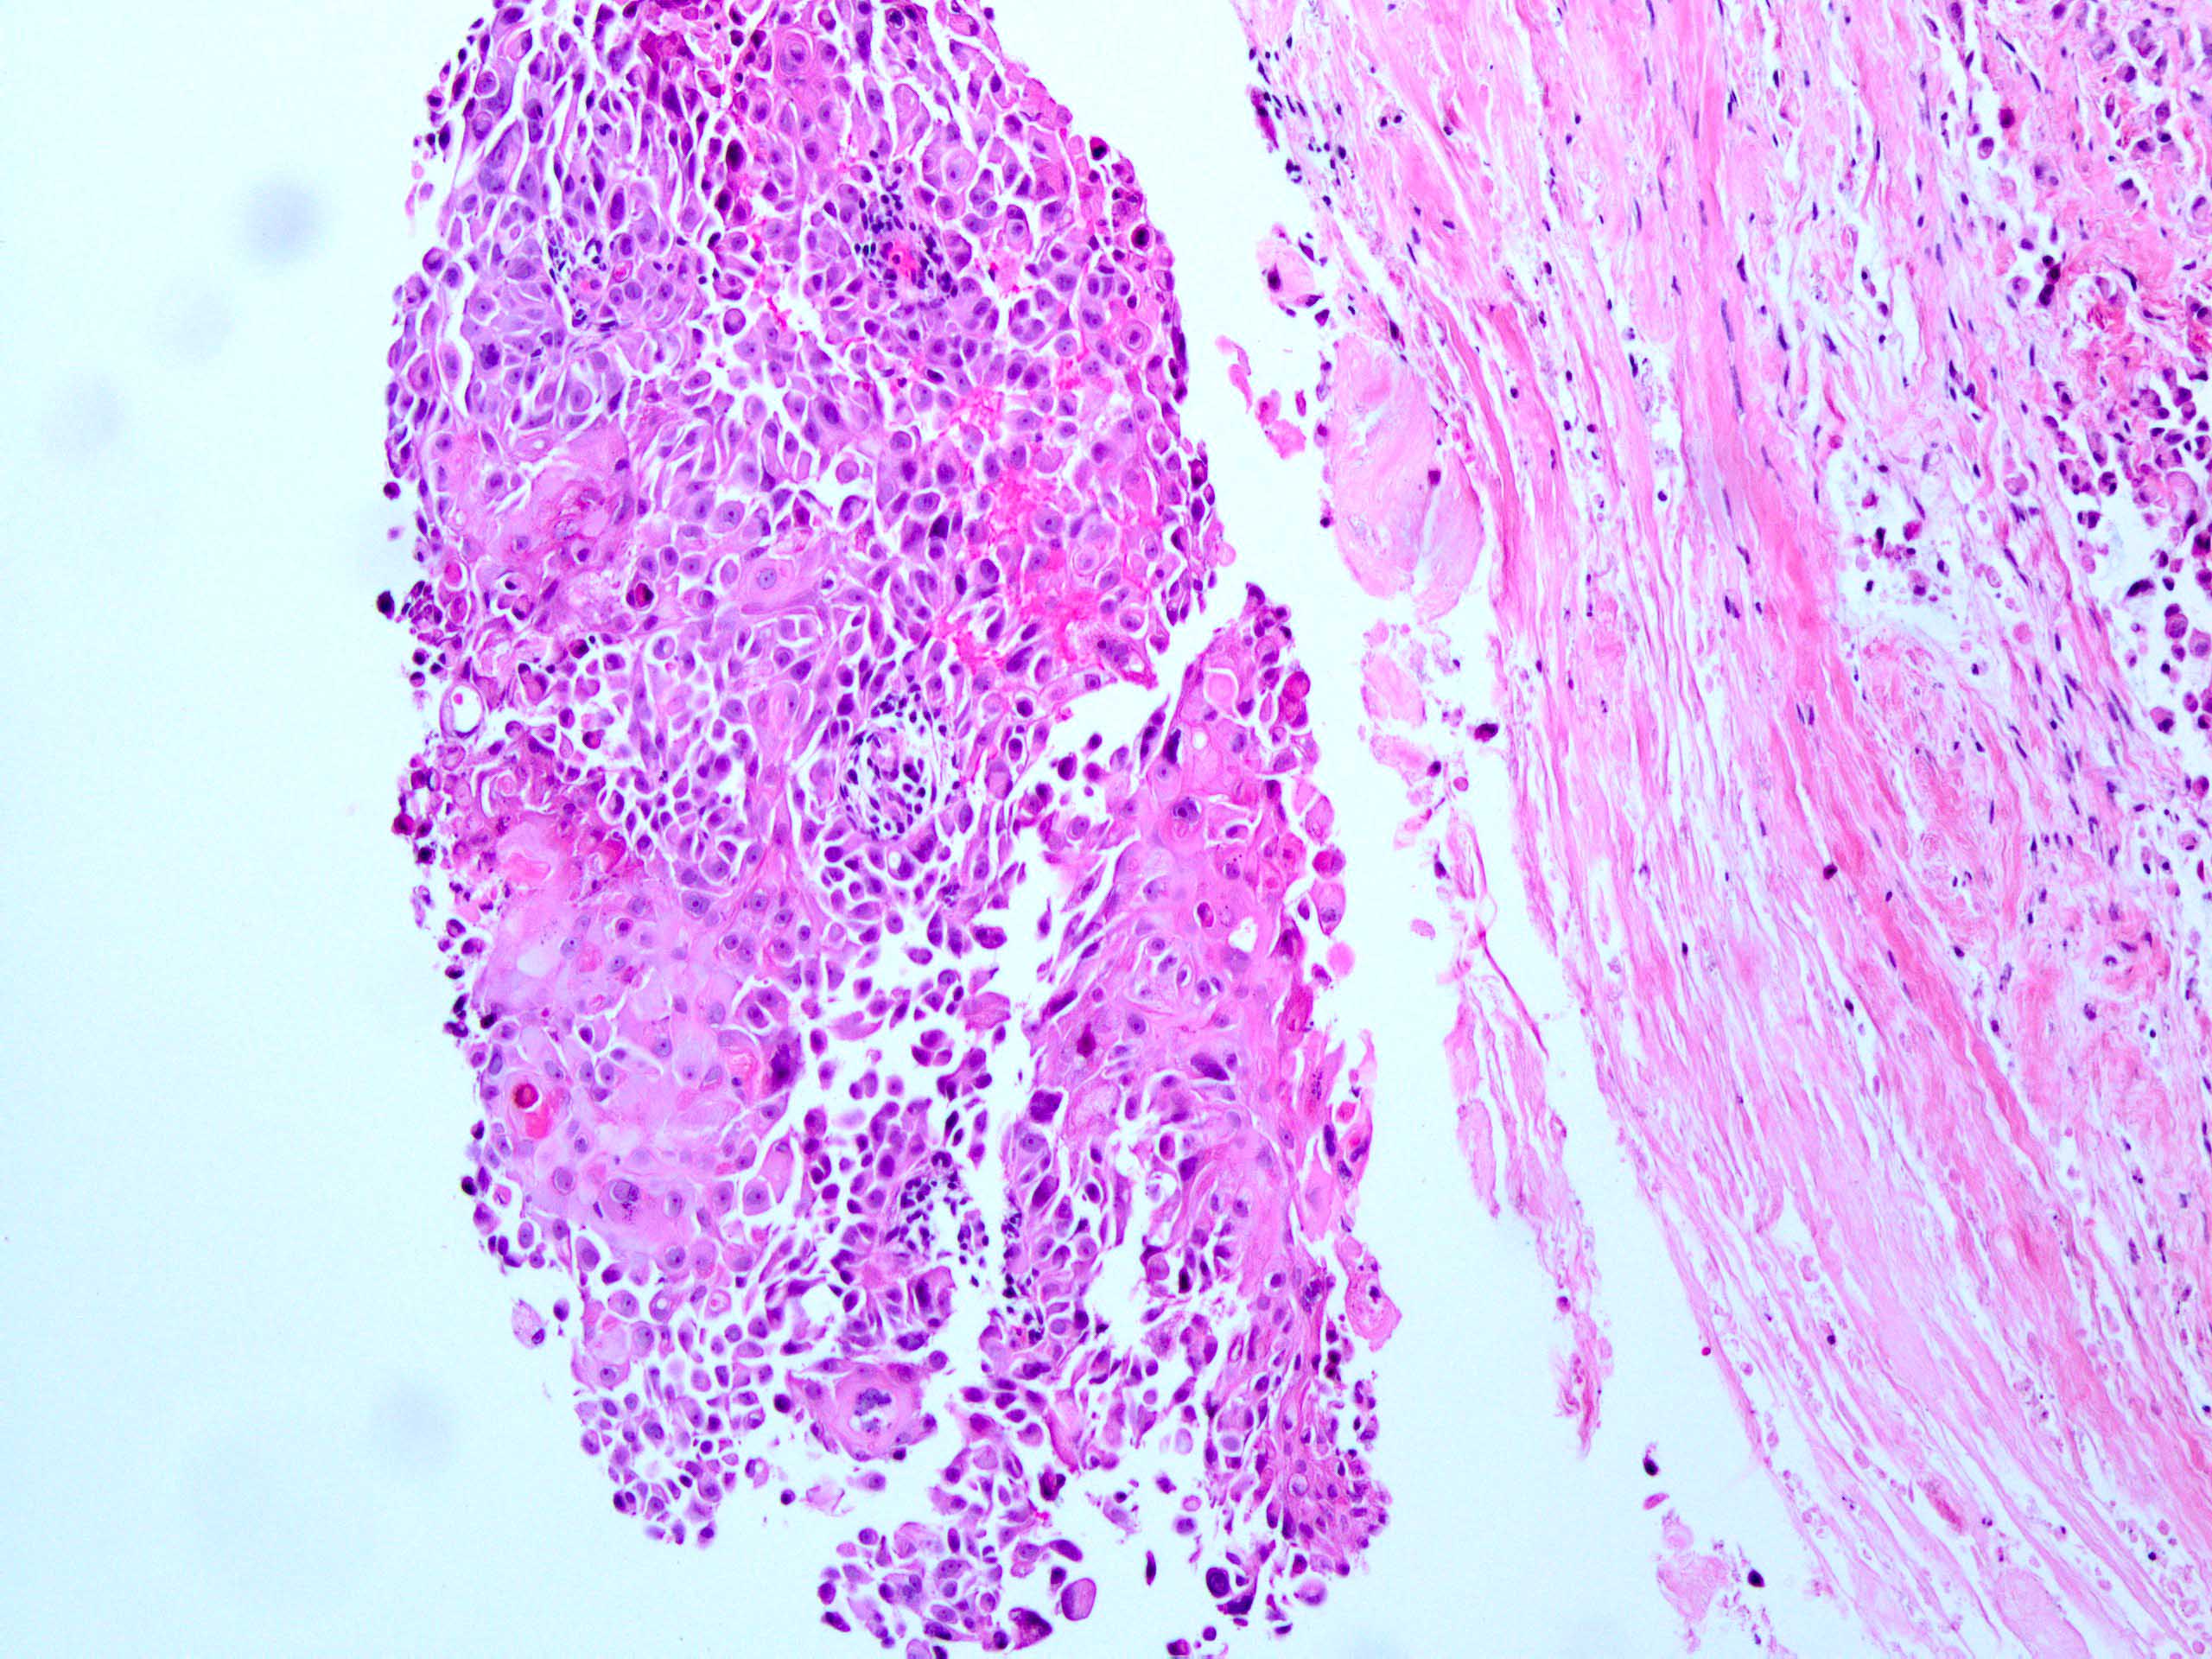 Metaplastic carcinoma with squamous differentiation